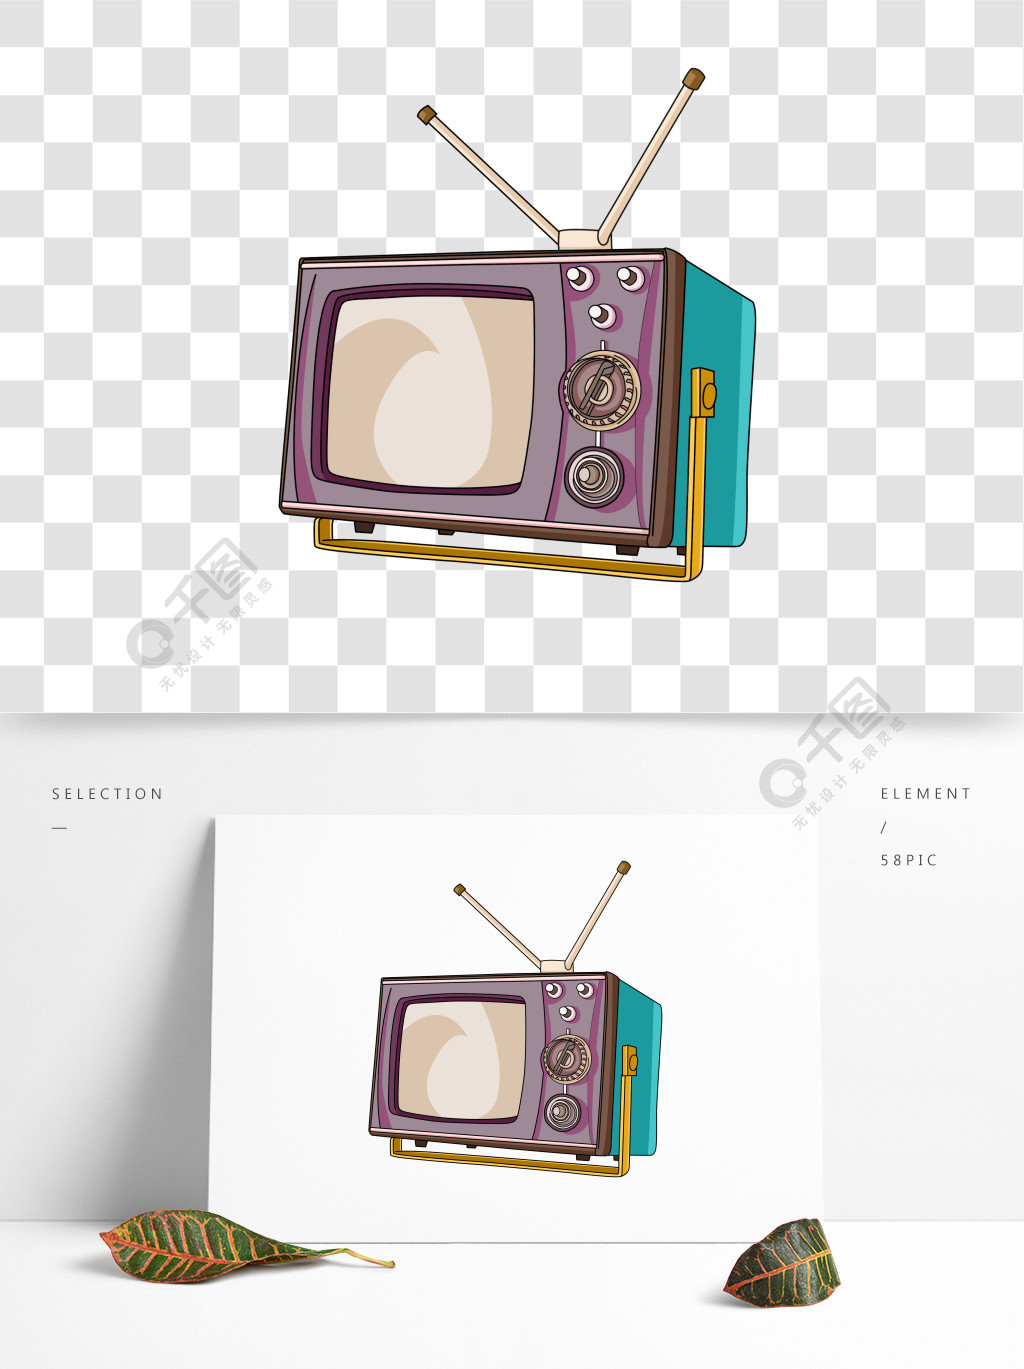 波普风格元素复古老电视机潮流年代电器1年前发布